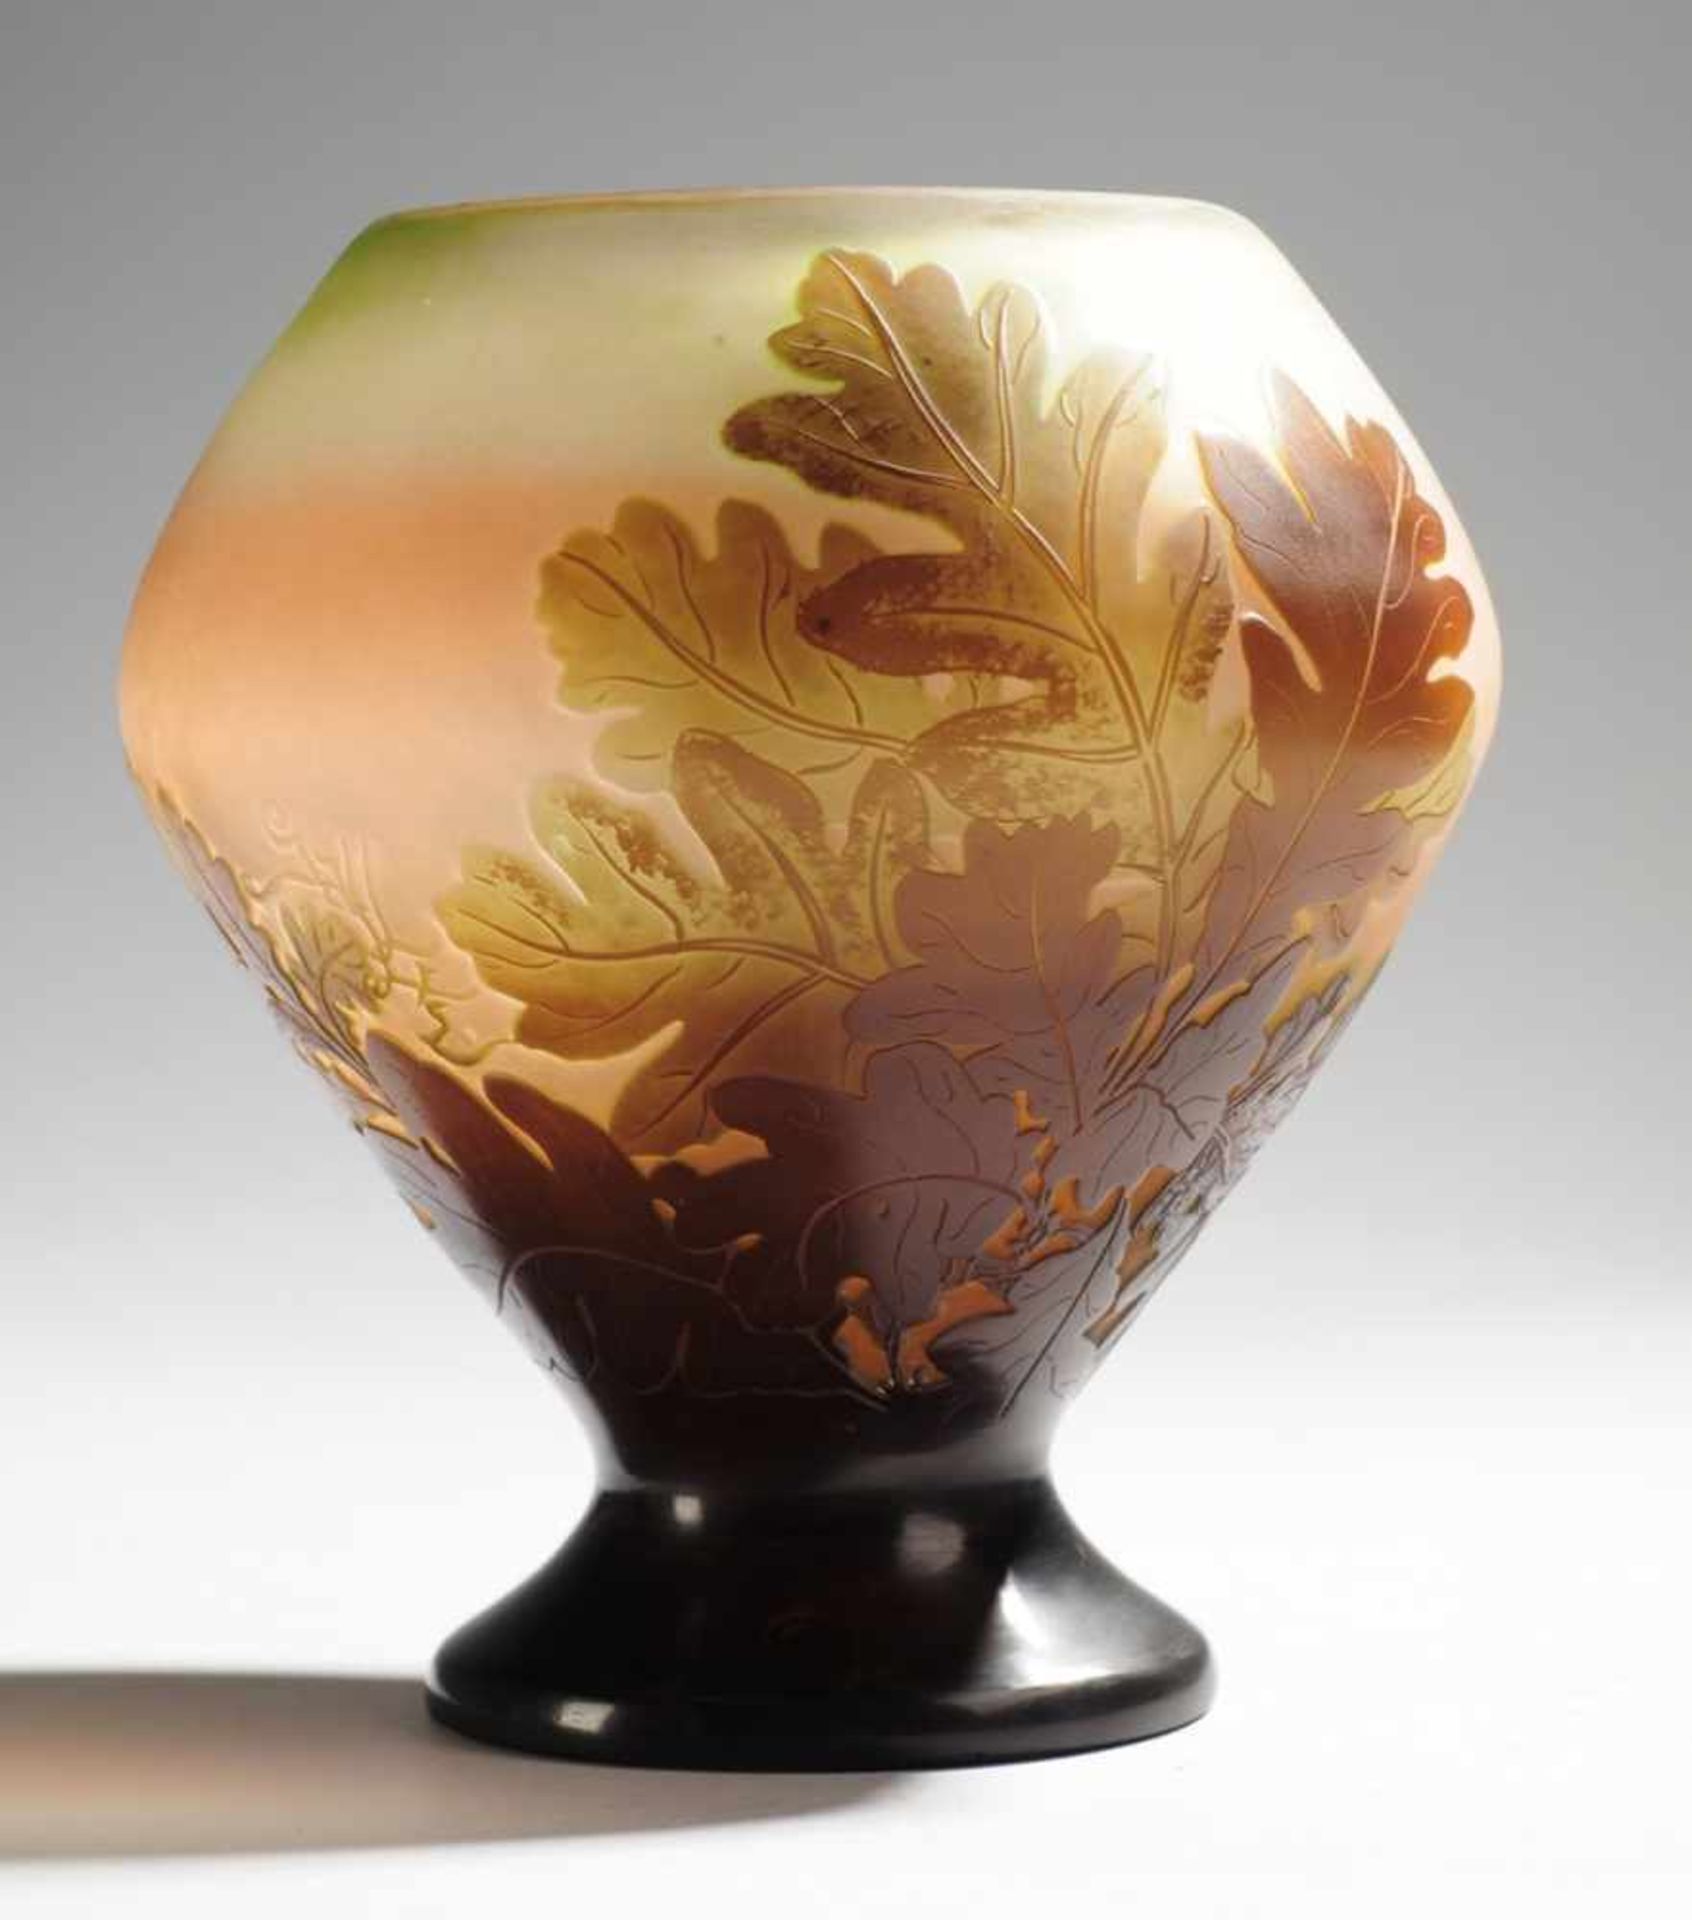 Jugendstil-Vase mit EichenlaubFarbloses Glas, rot, grün u. violett überfangen. Formgeblasen, - Bild 2 aus 2